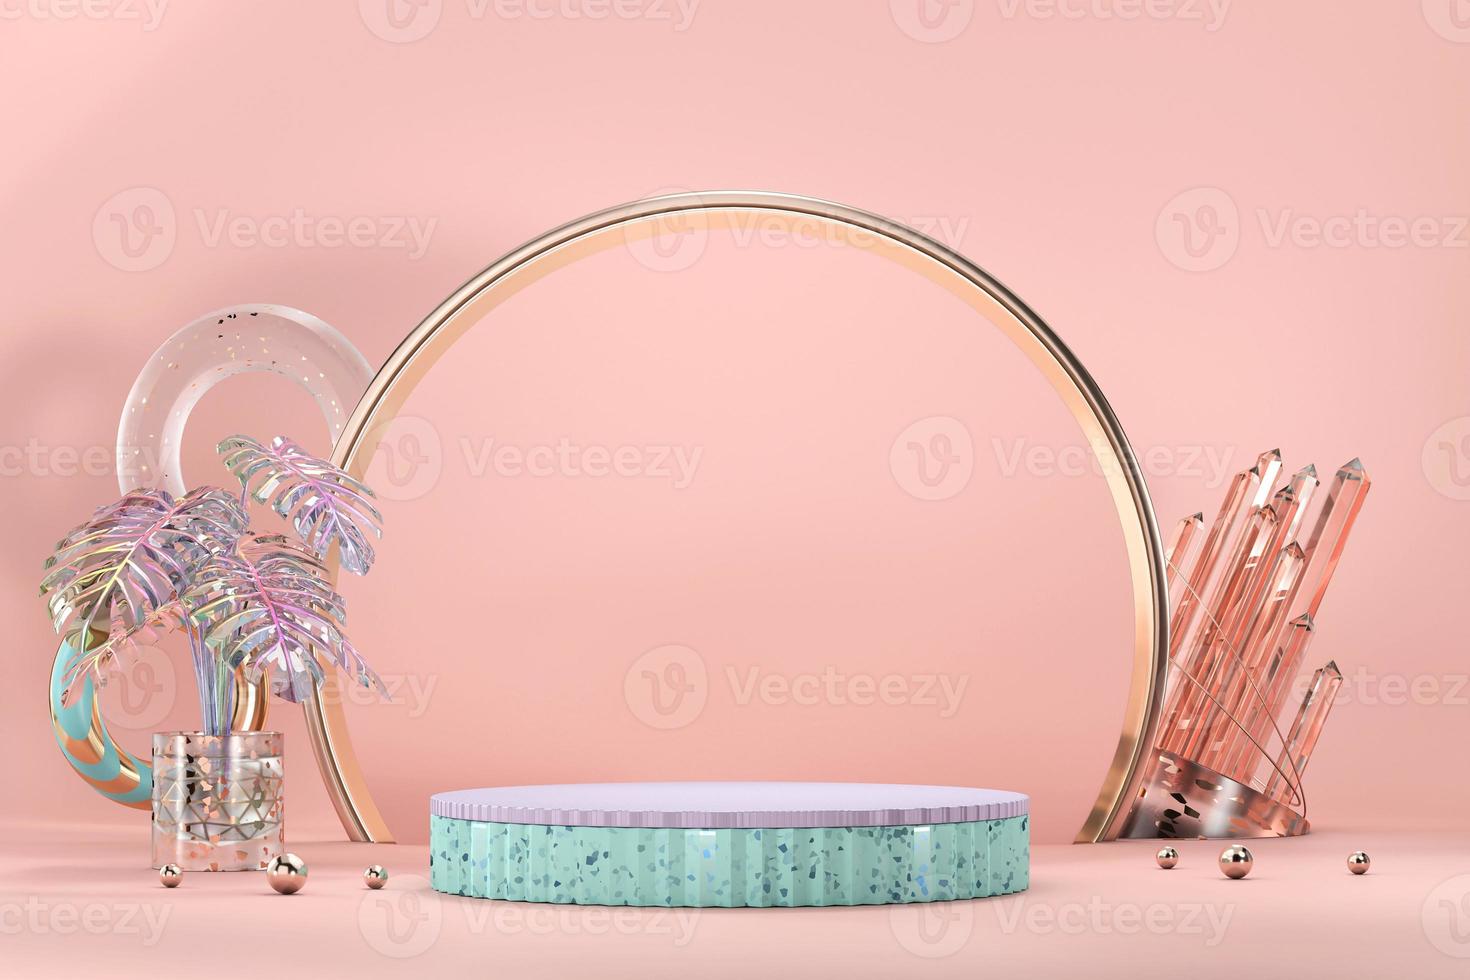 podio para vitrina de exhibición de productos con maceta monstera y decoración de cristal, representación 3d foto